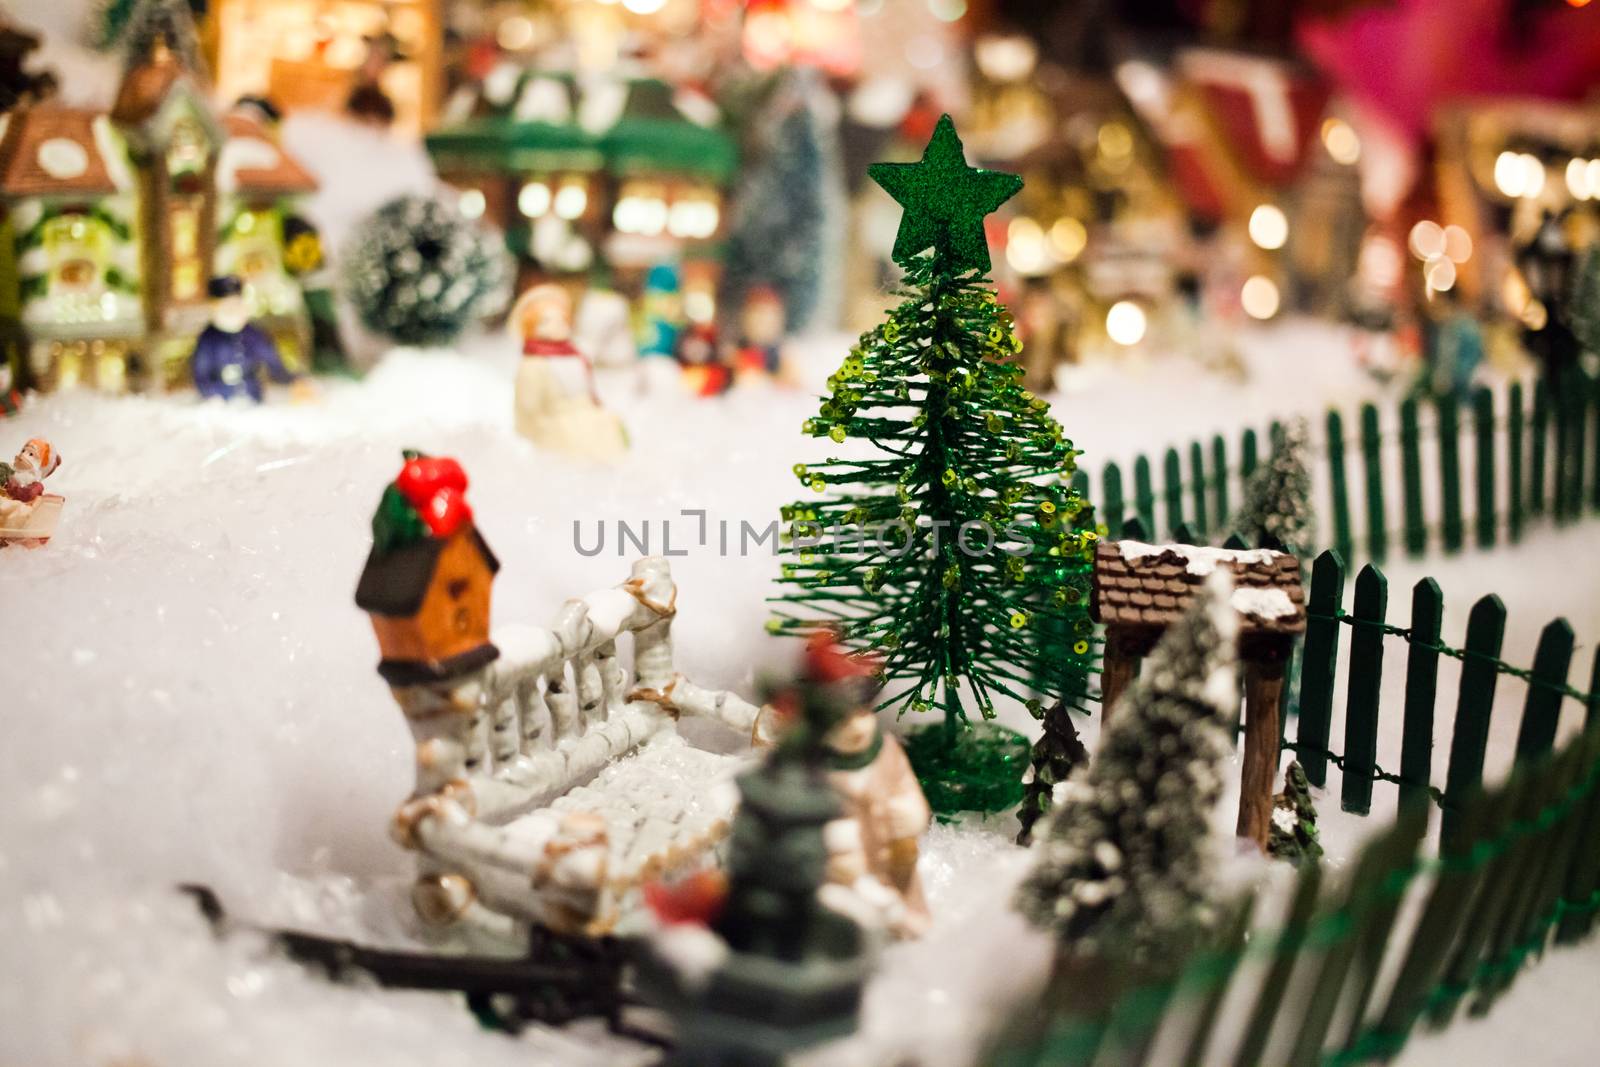 Miniature Christmas Village under Xmas Tree Closeup